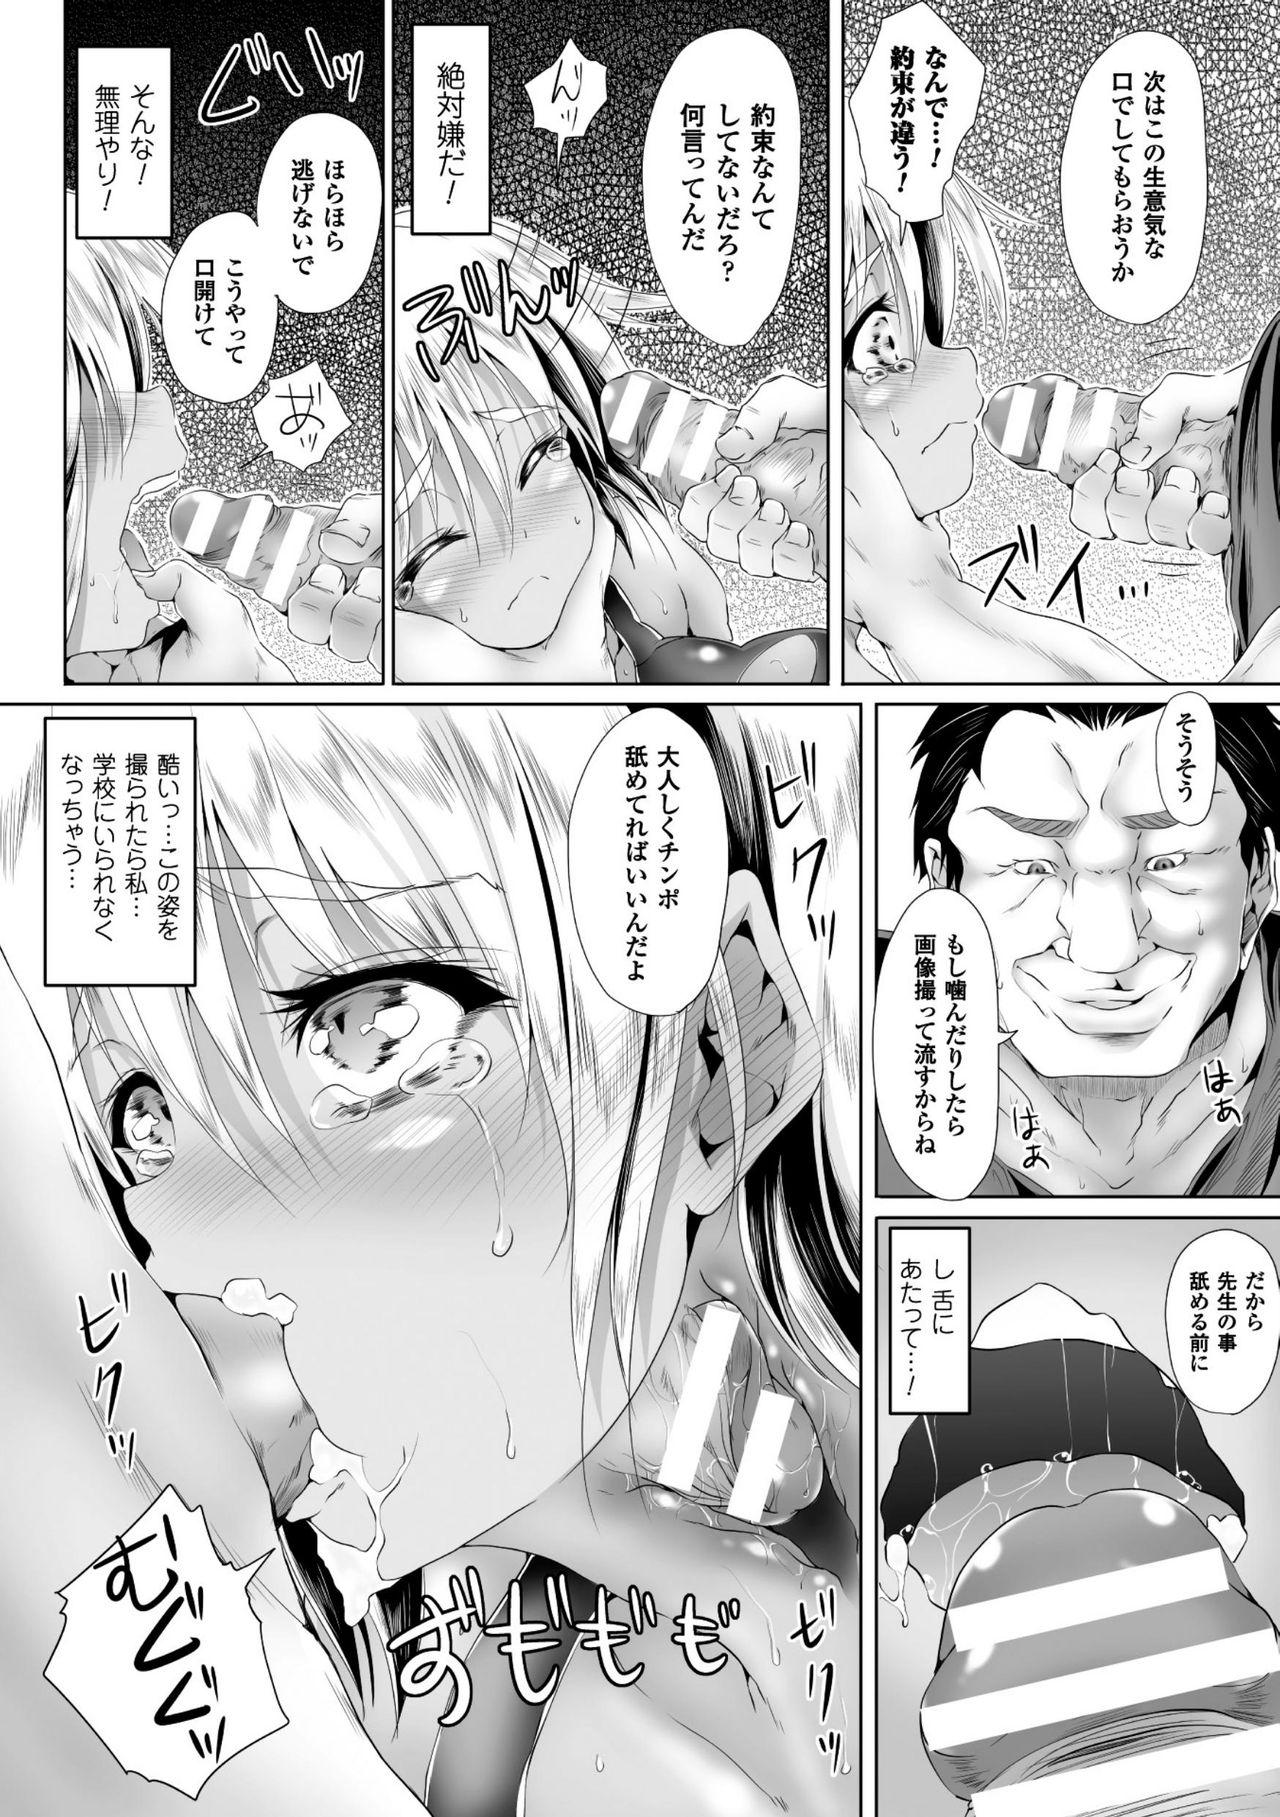 Seigi no Heroine Kangoku File Vol. 8 48